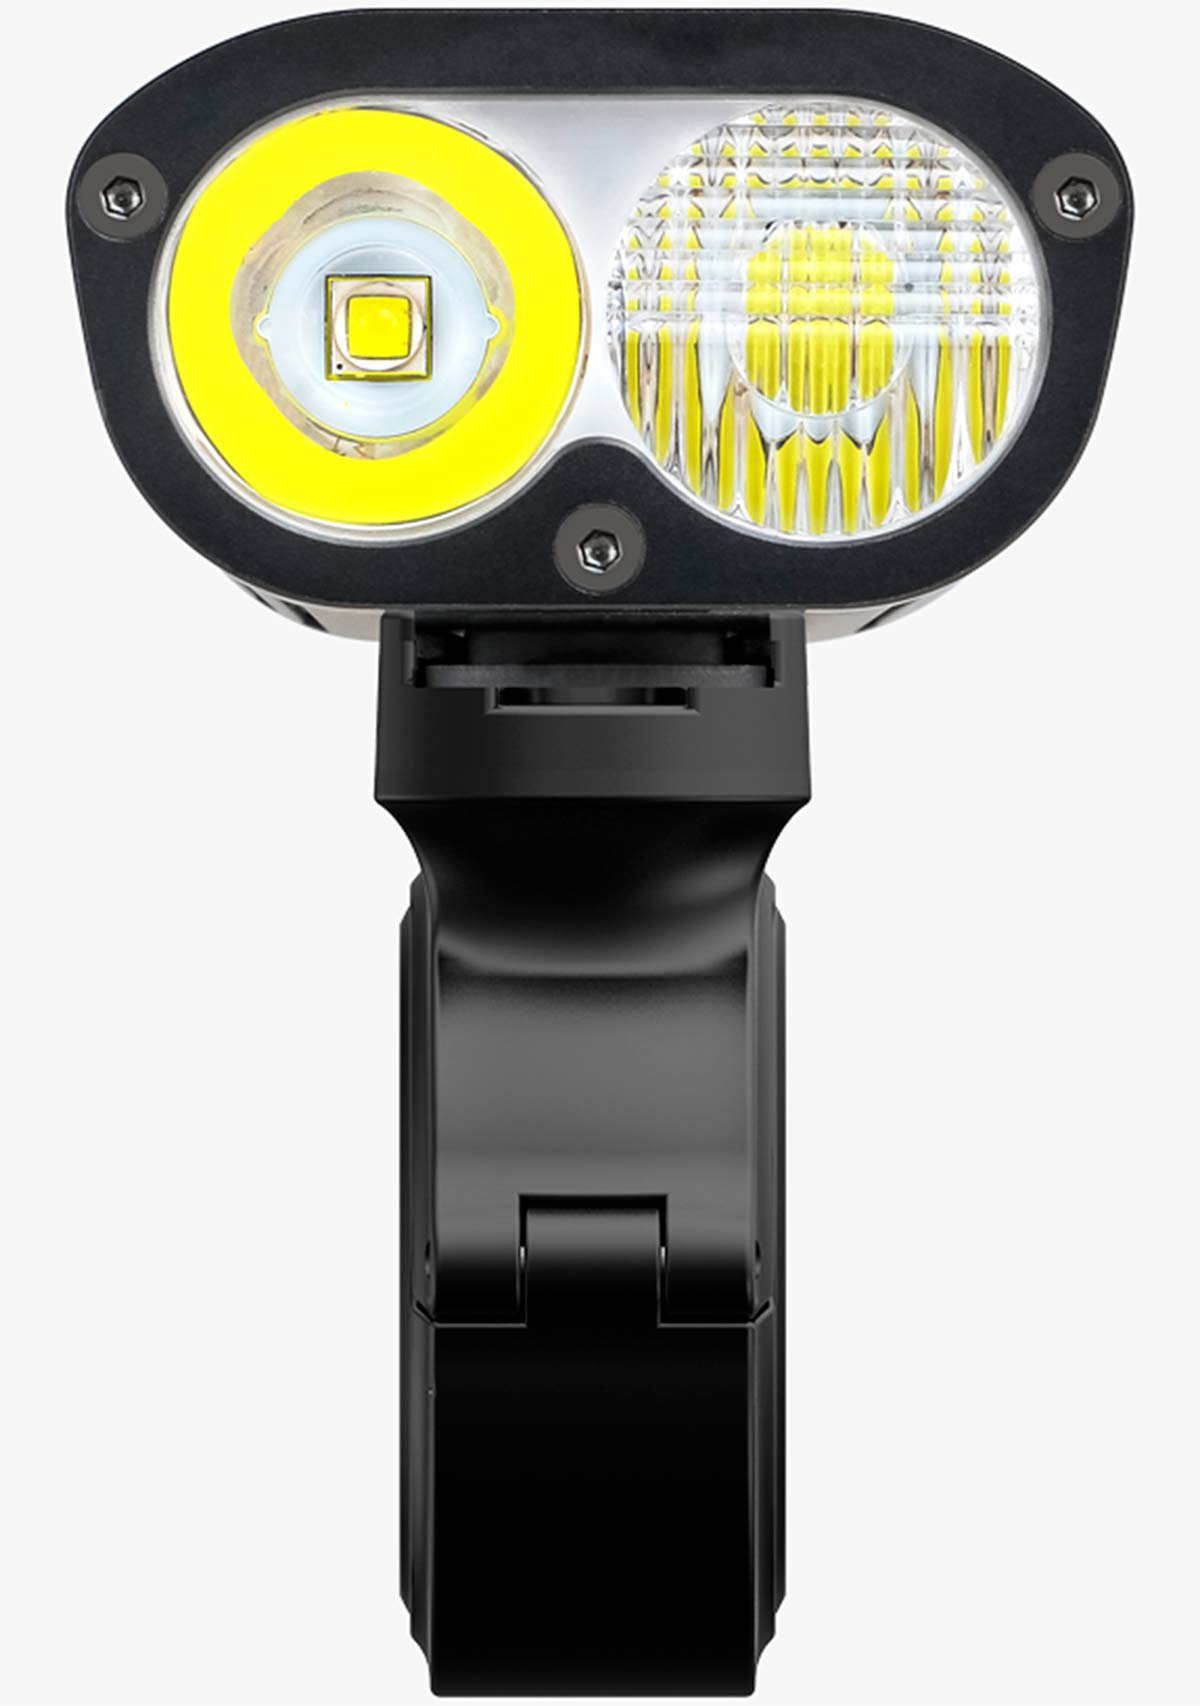 En TodoMountainBike: Ravemen PR1600, un potente foco LED con función de largas y cortas, luz diurna y mando remoto inalámbrico